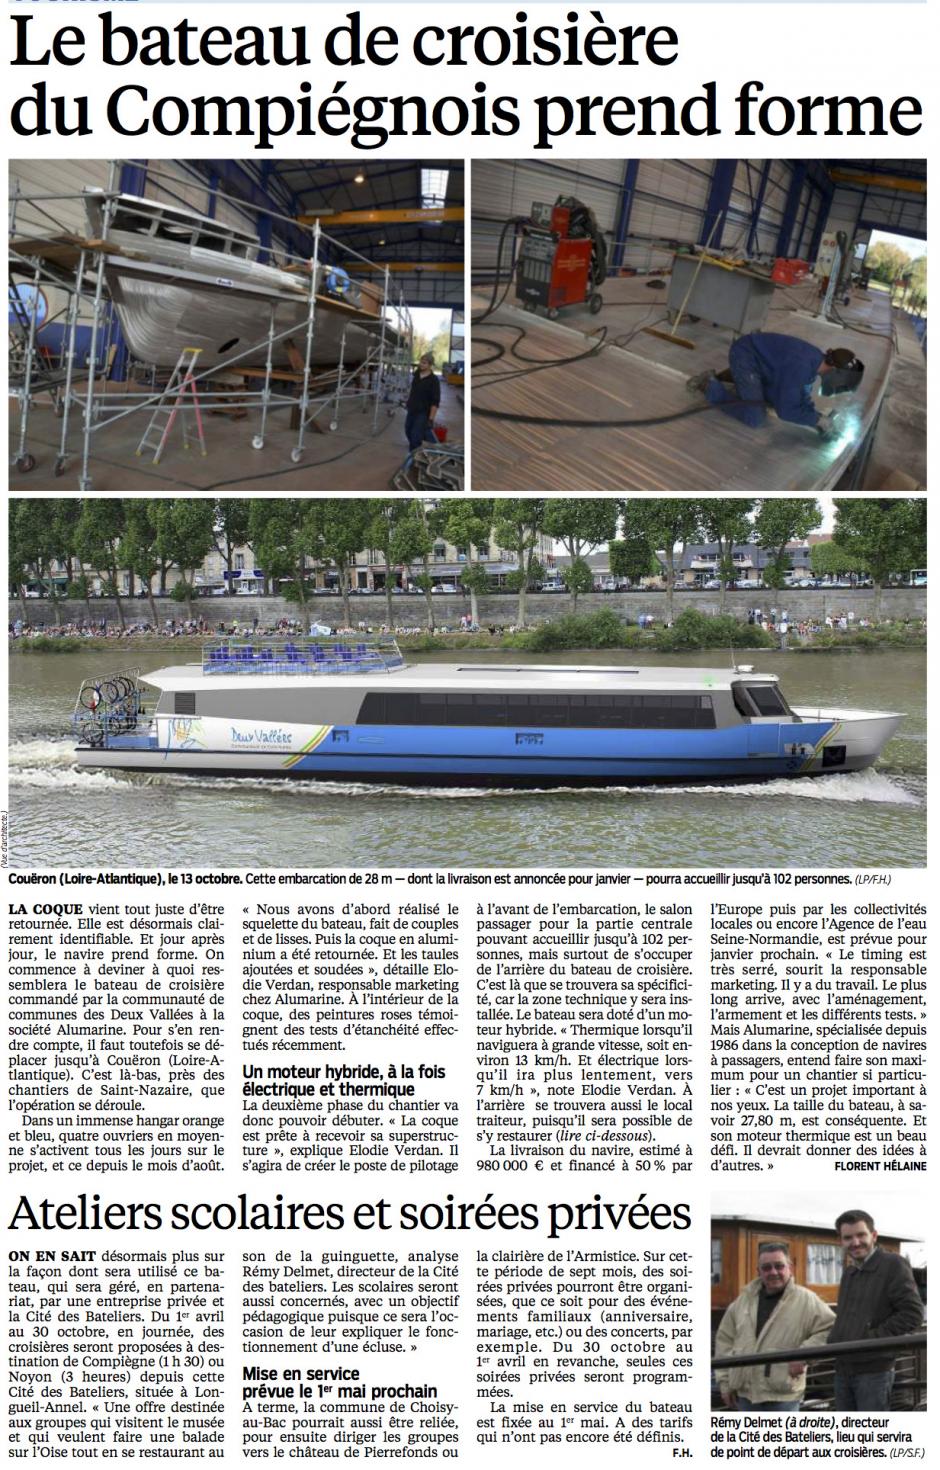 20141101-LeP-Compiégnois-Le bateau de croisière prend forme